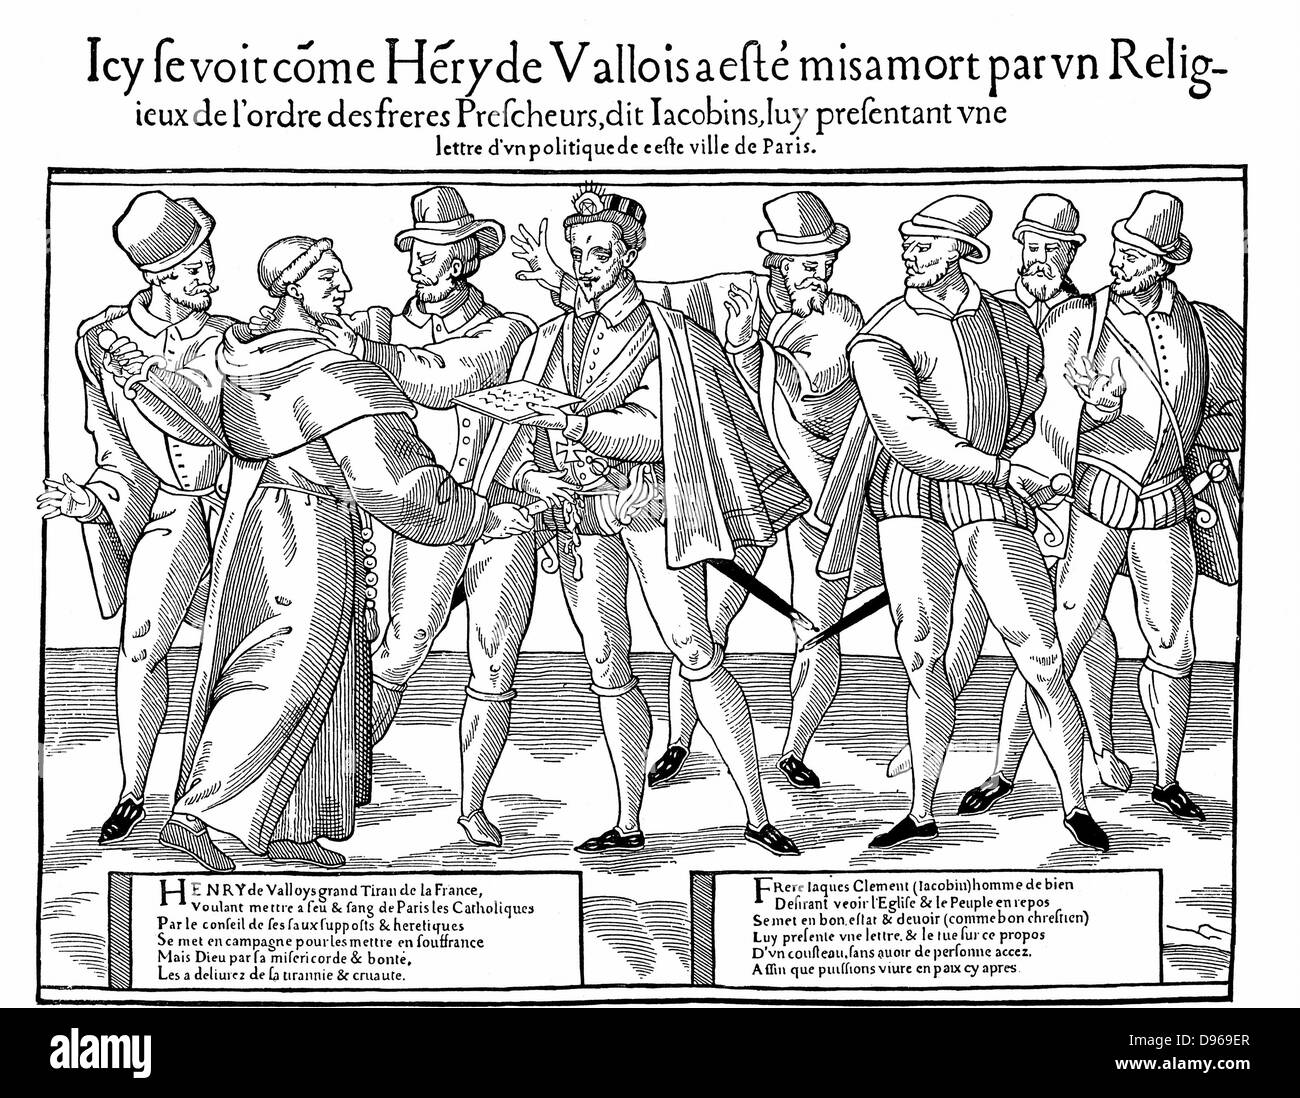 Heinrich III. (1551-1589), König von Frankreich von 1584. Von Pater Jacques Clement für seine Opposition gegen die katholische Liga ermordet. Holzschnitt 1589-1590. Stockfoto